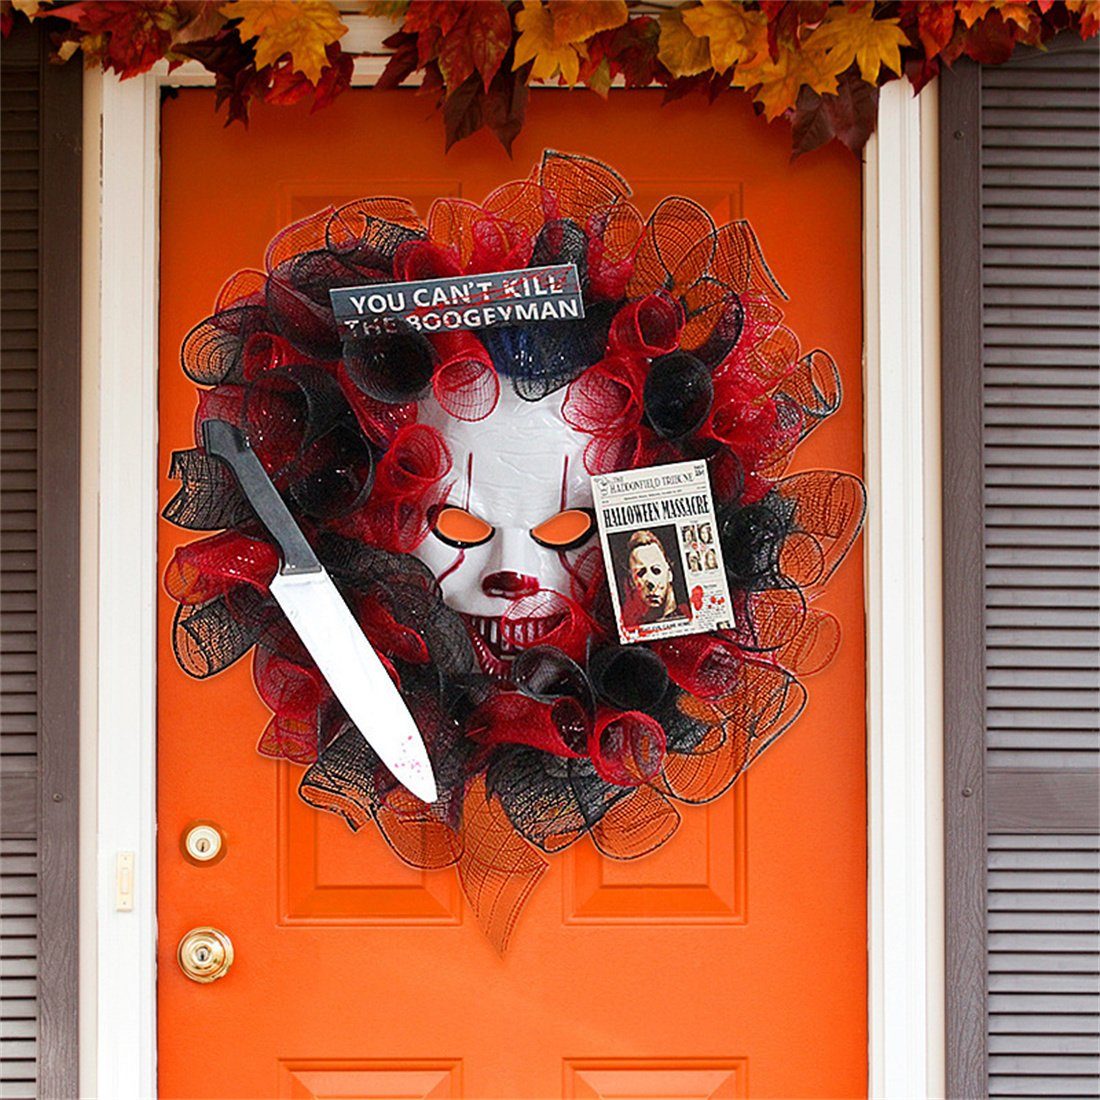 Halloween DÖRÖY Kränze, Kranz Dekoration Party Kunstgirlande hängend, Tür Maske Clown